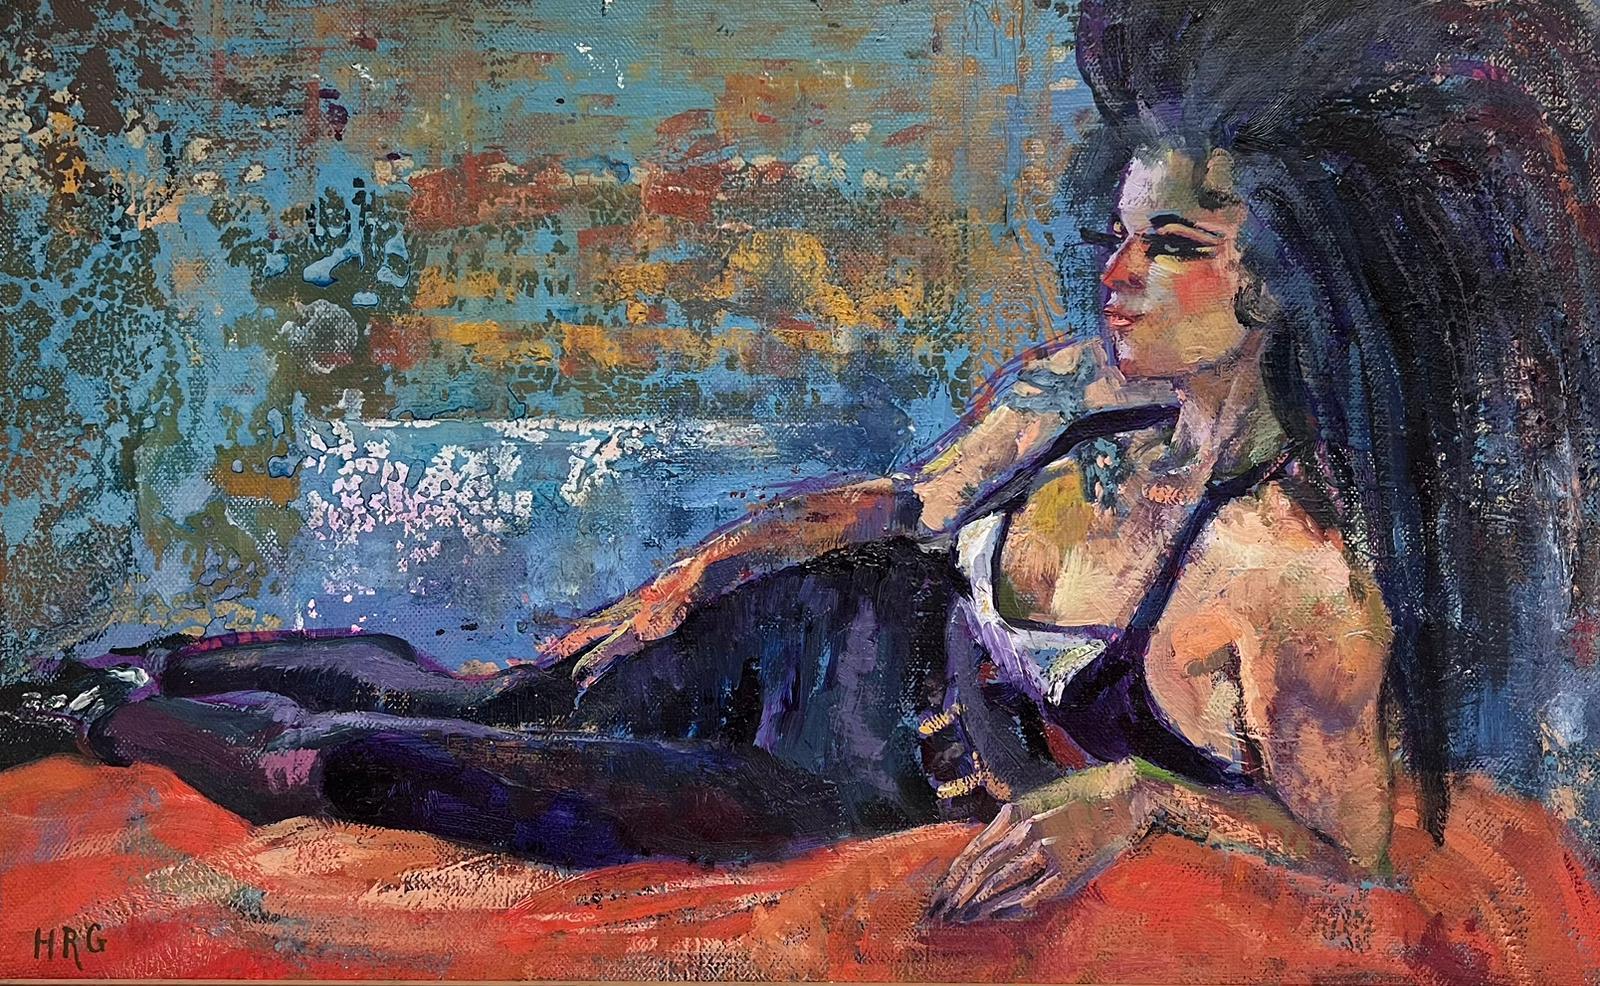 Peinture à l'huile moderniste britannique, portrait de Amy Whitehouse, peint en relief 